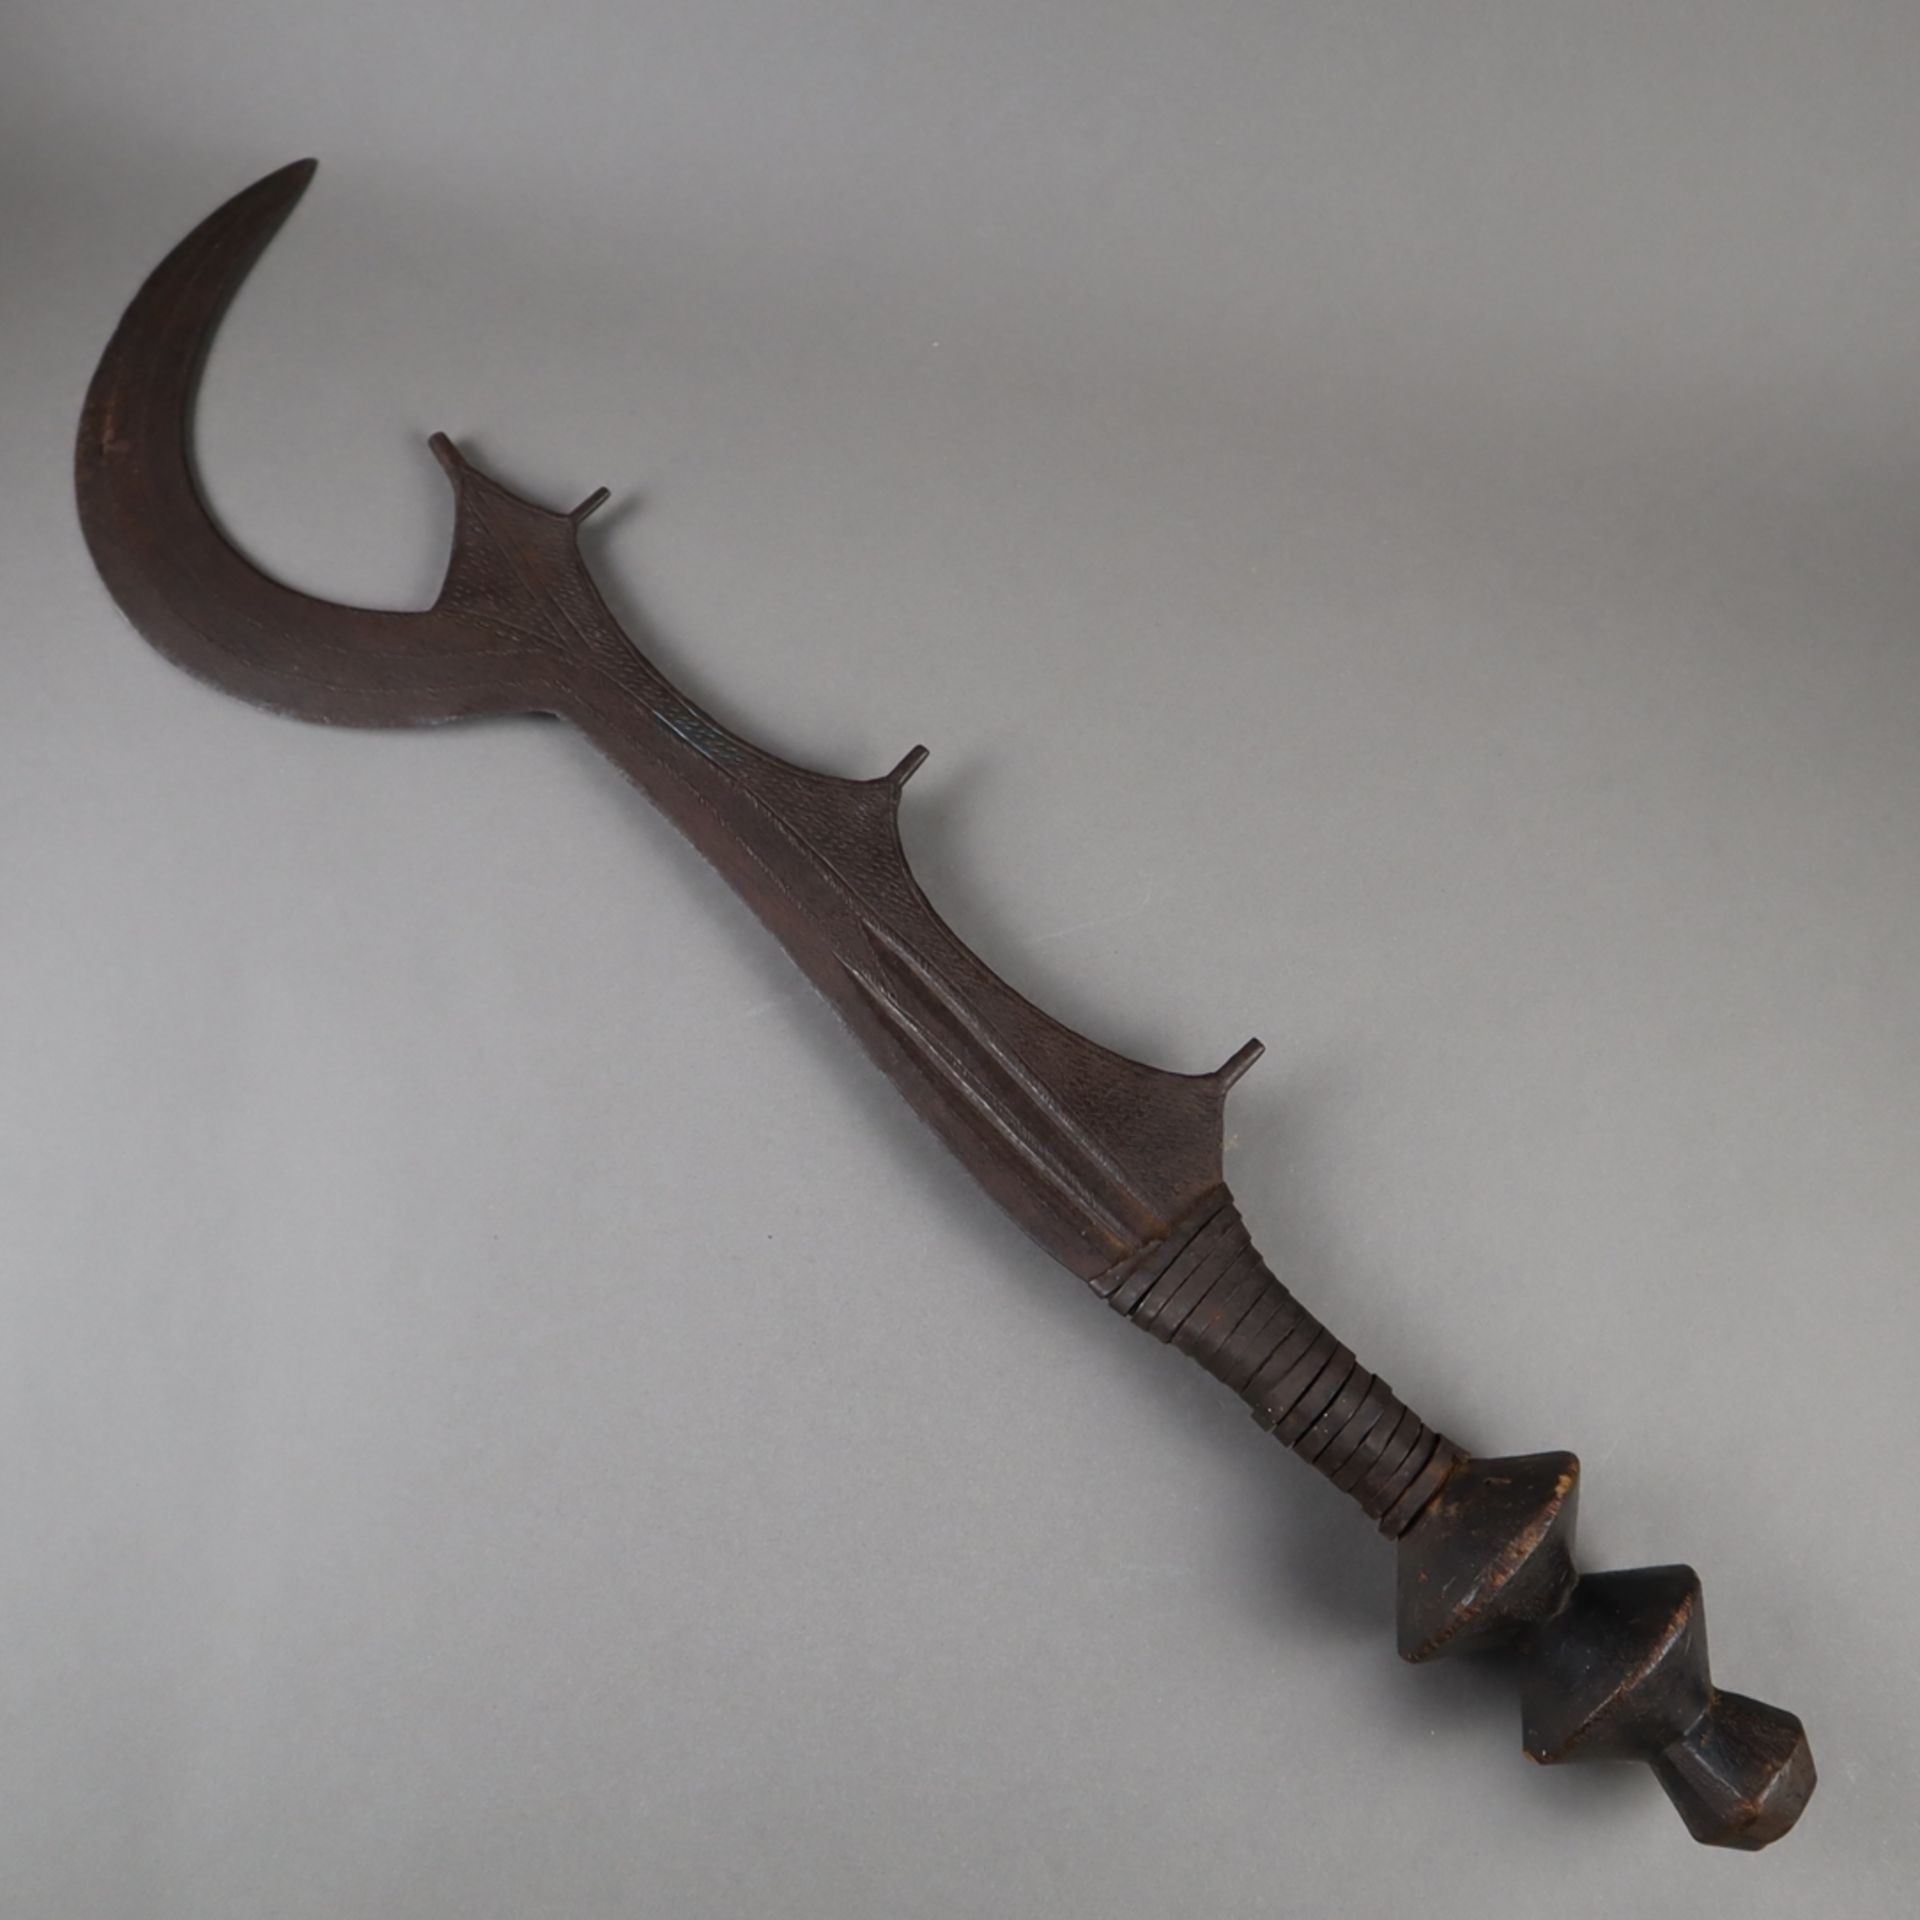 Ngulu - Sichelmesser/Richtschwert der Ngombe, D.R. Kongo, formtypische Eisenkli